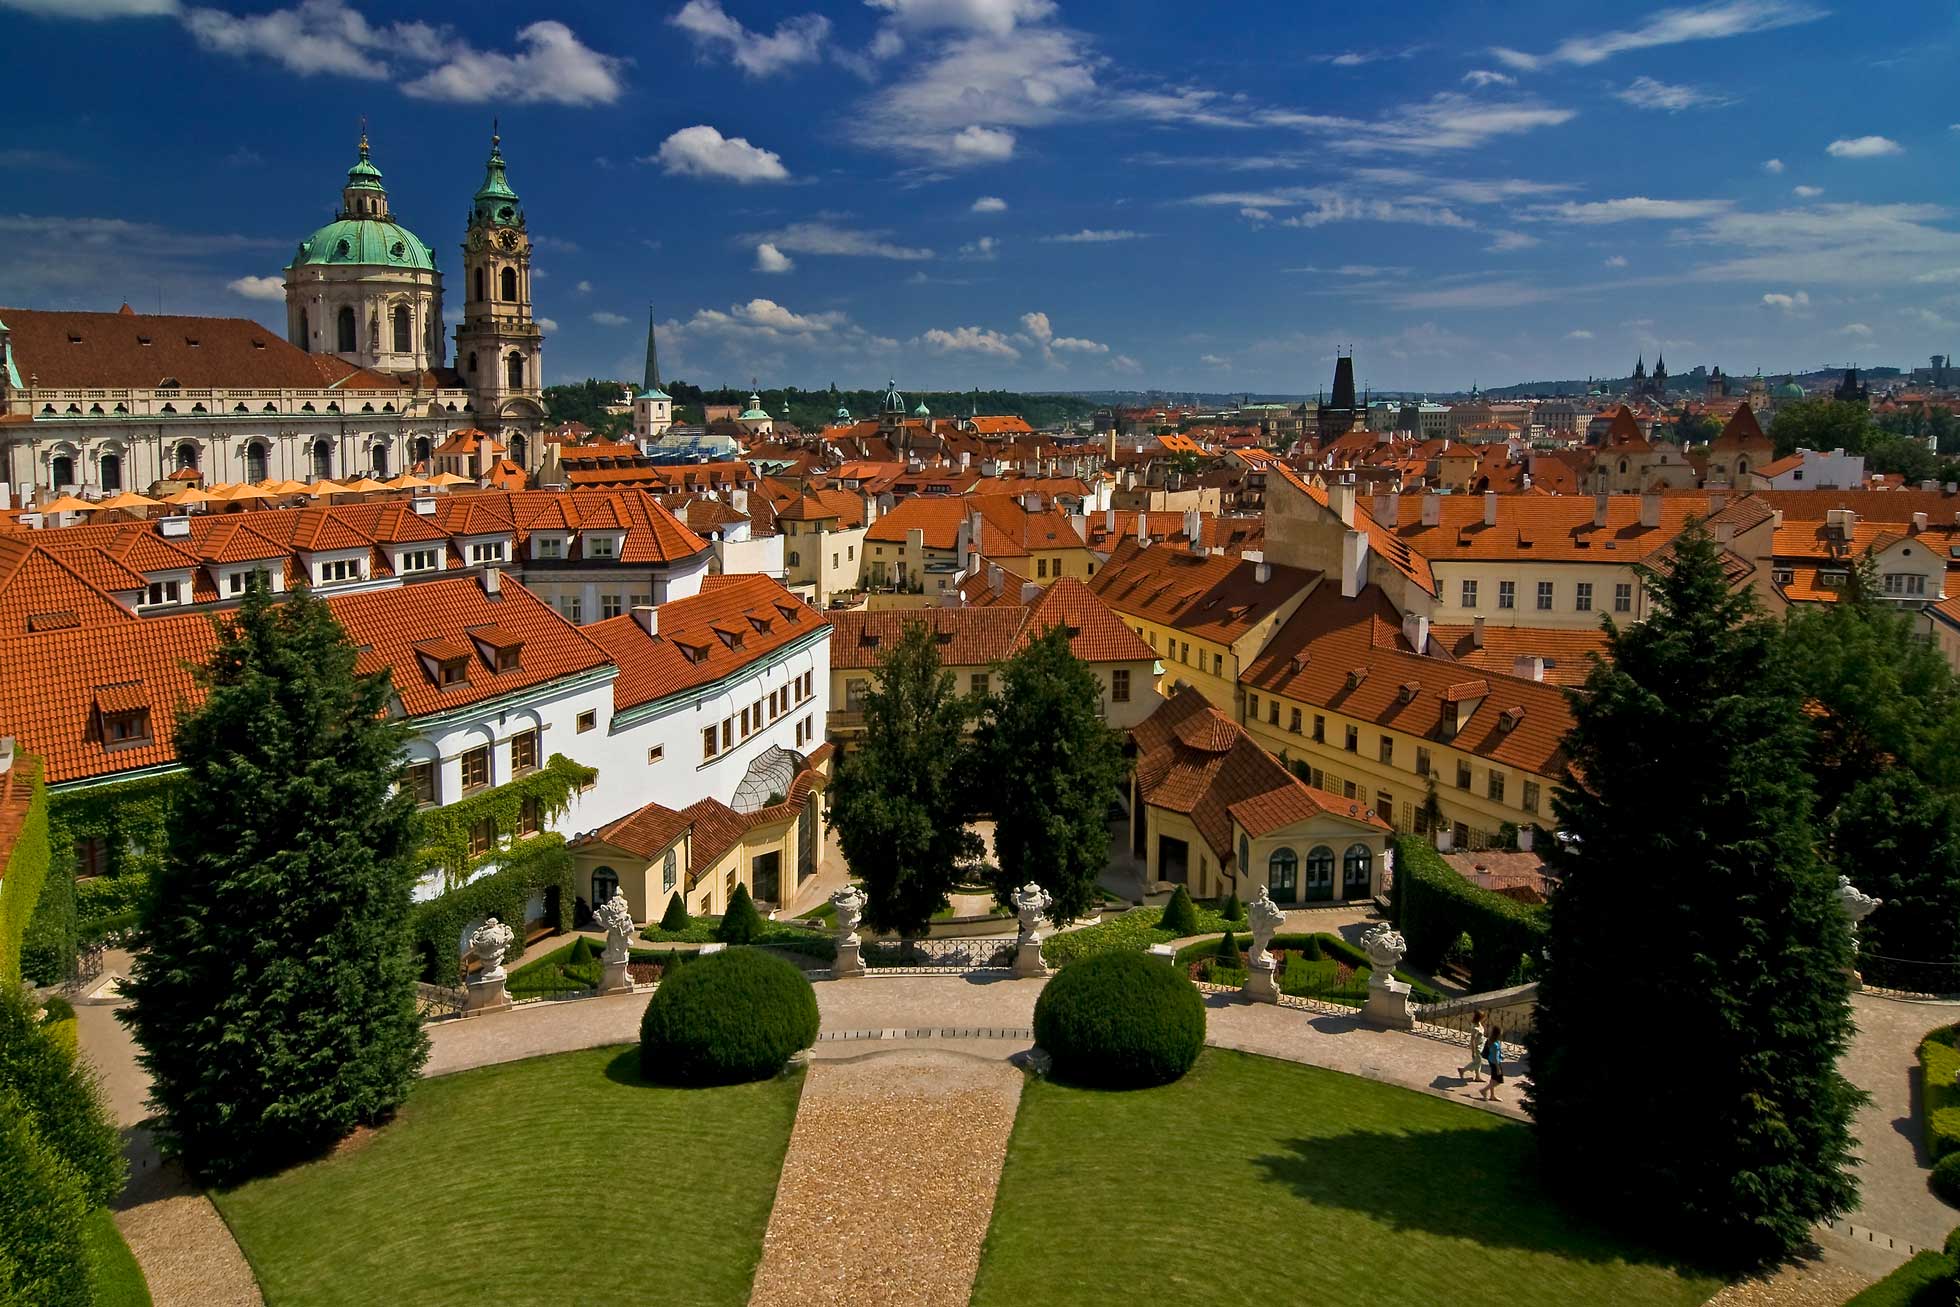 Grupp- och konferensresa Prag med stadsvandring